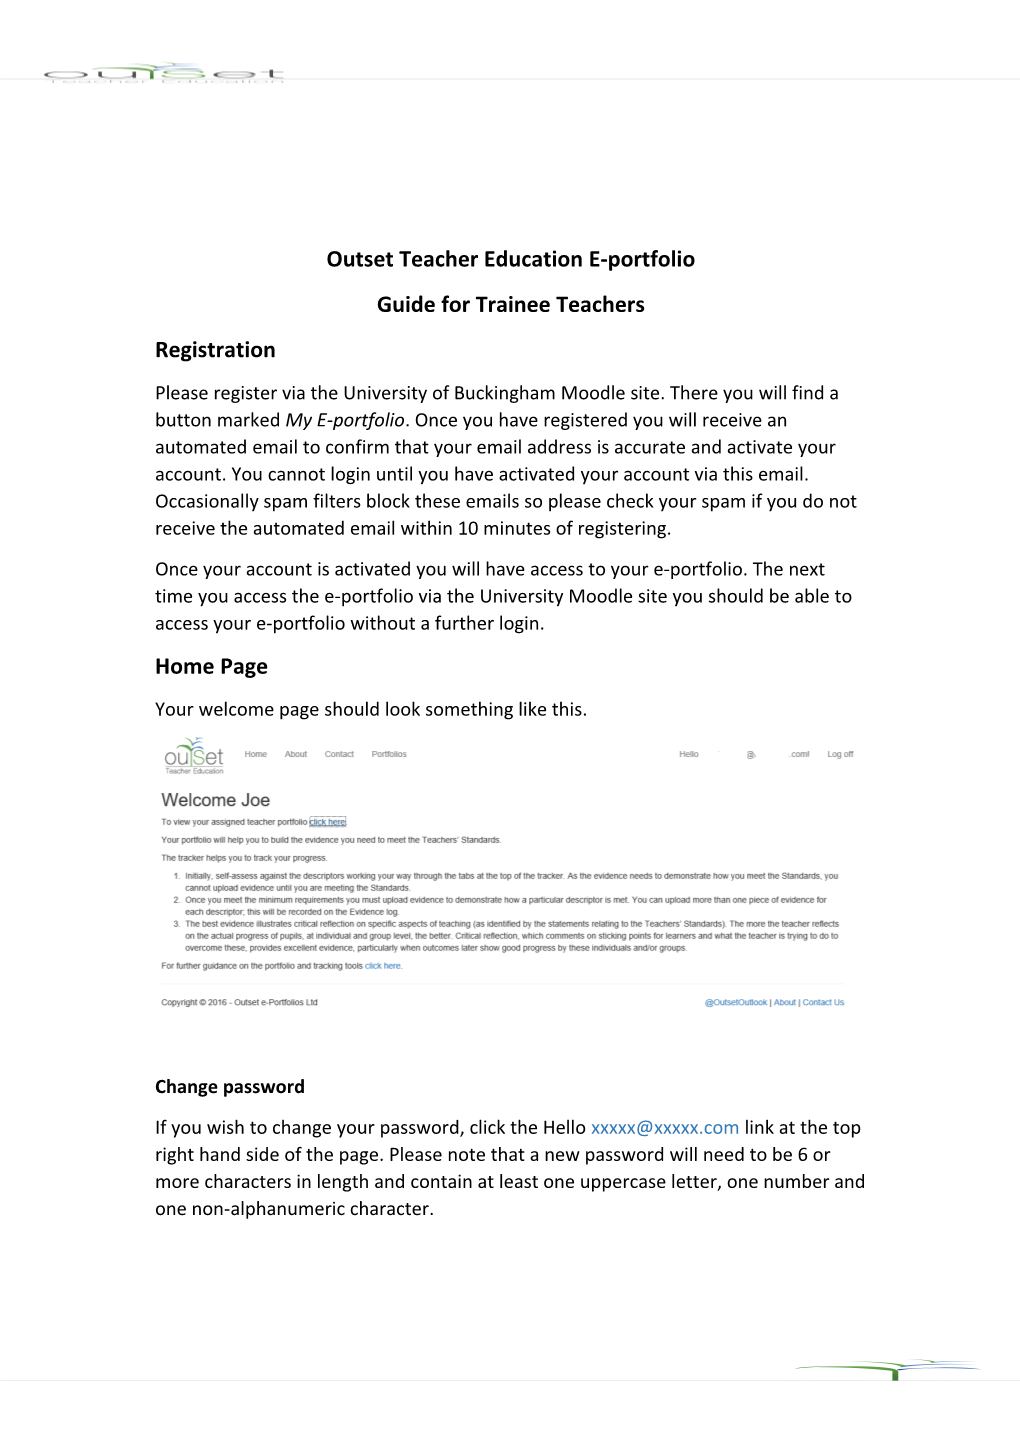 Outset Teacher Education E-Portfolio